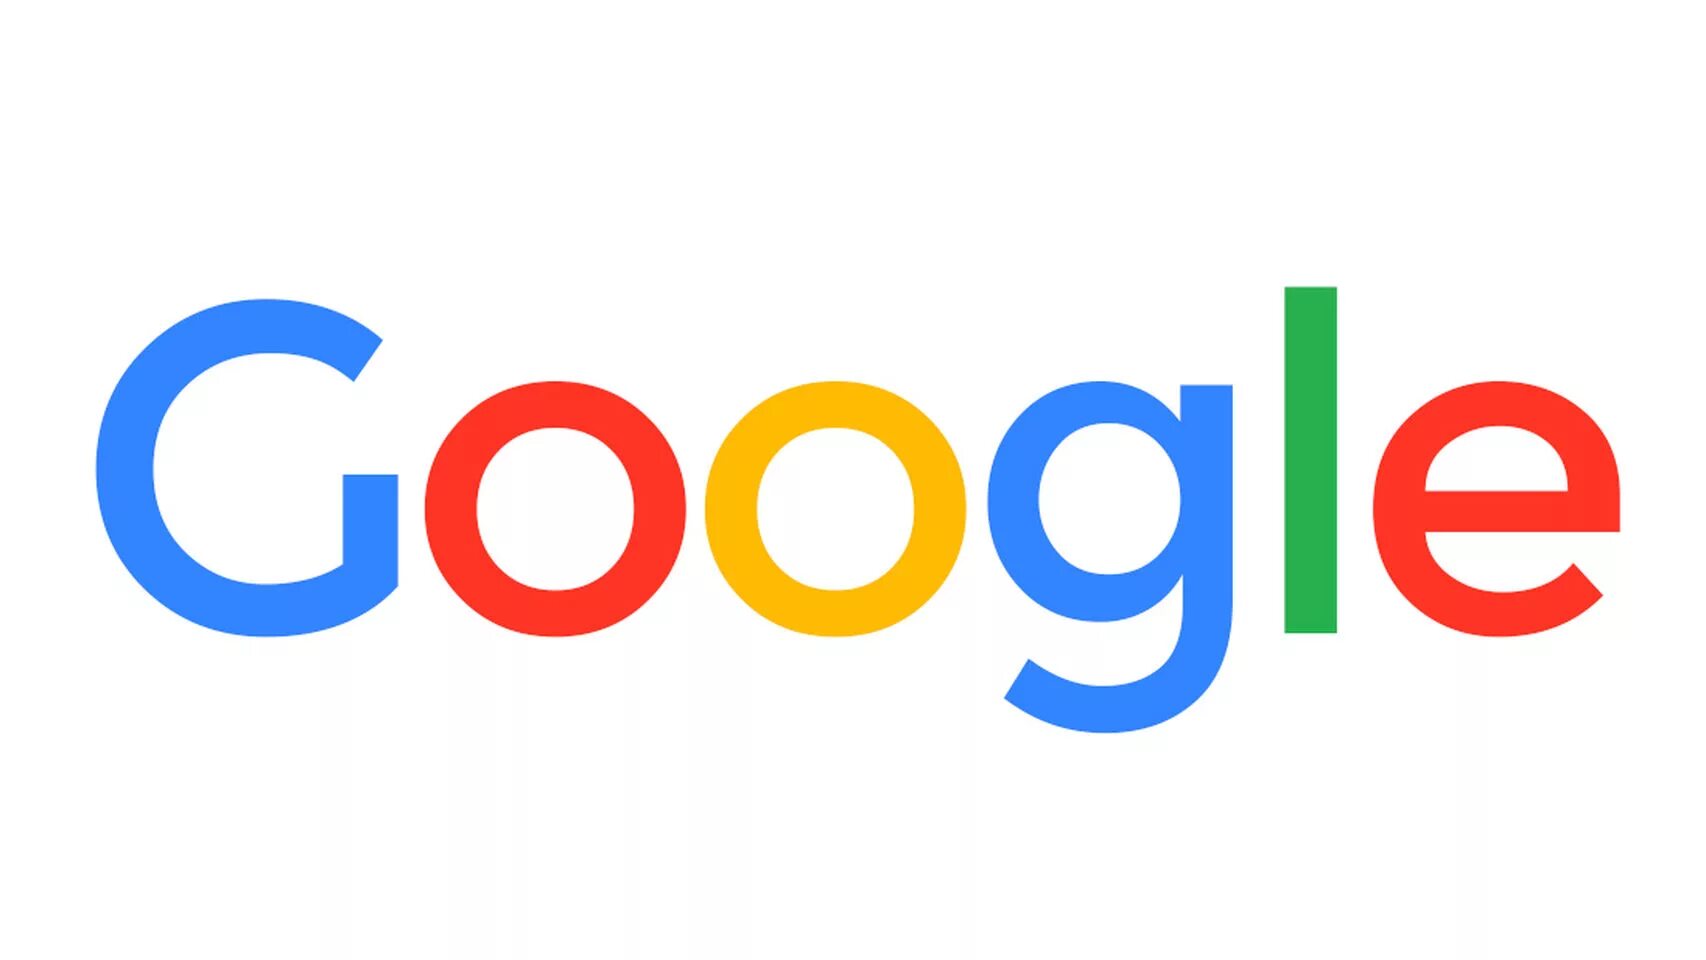 Google re. Гугл. Логотип гугл. Гугл фото логотип. Google логотип PNG.